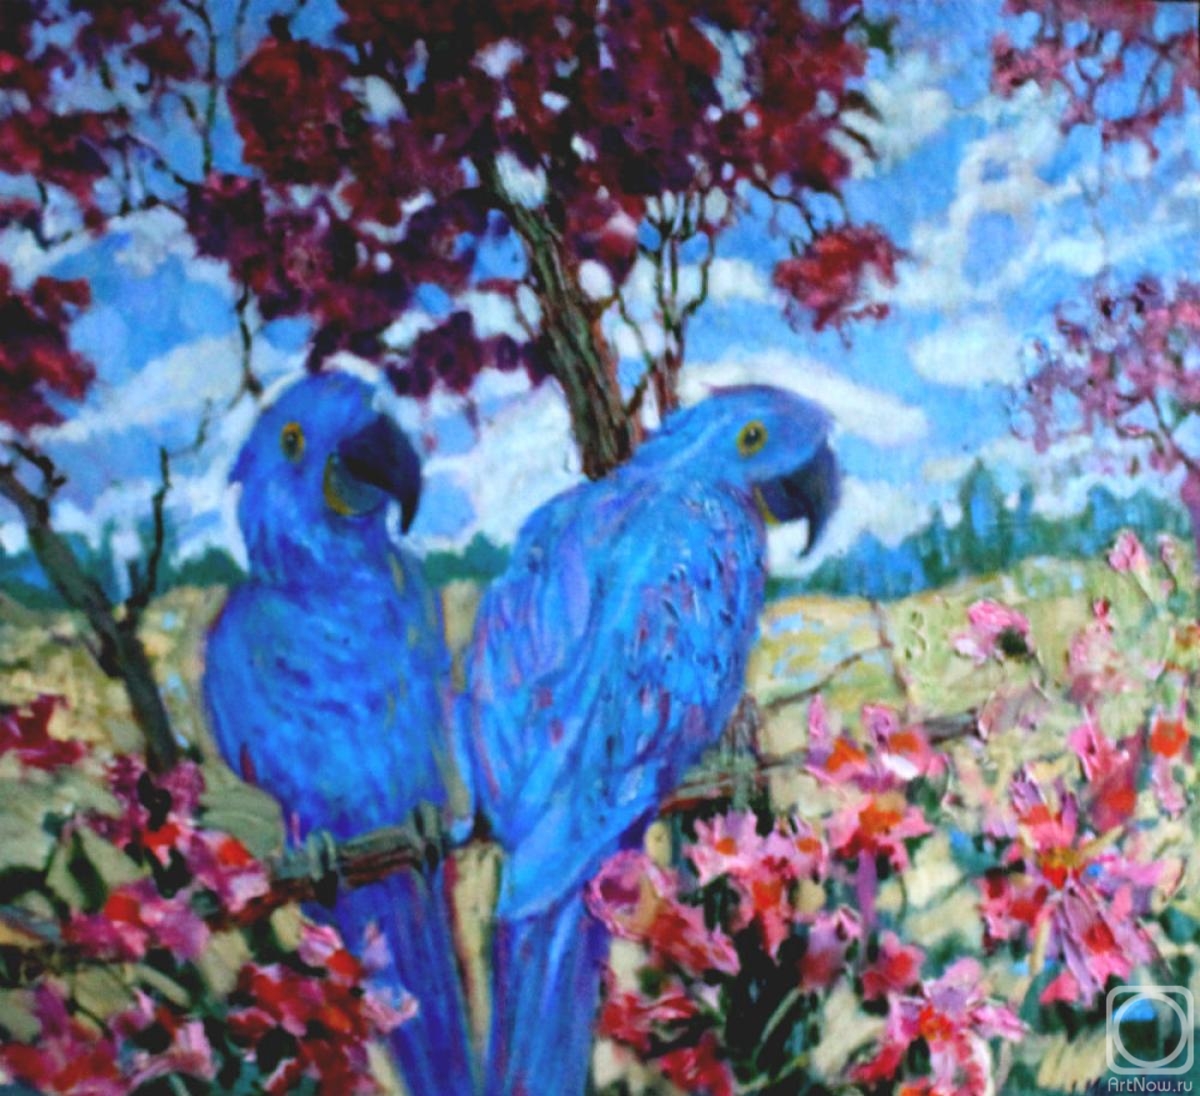 Moskaleva Irina. Blue macaw and tabebuya